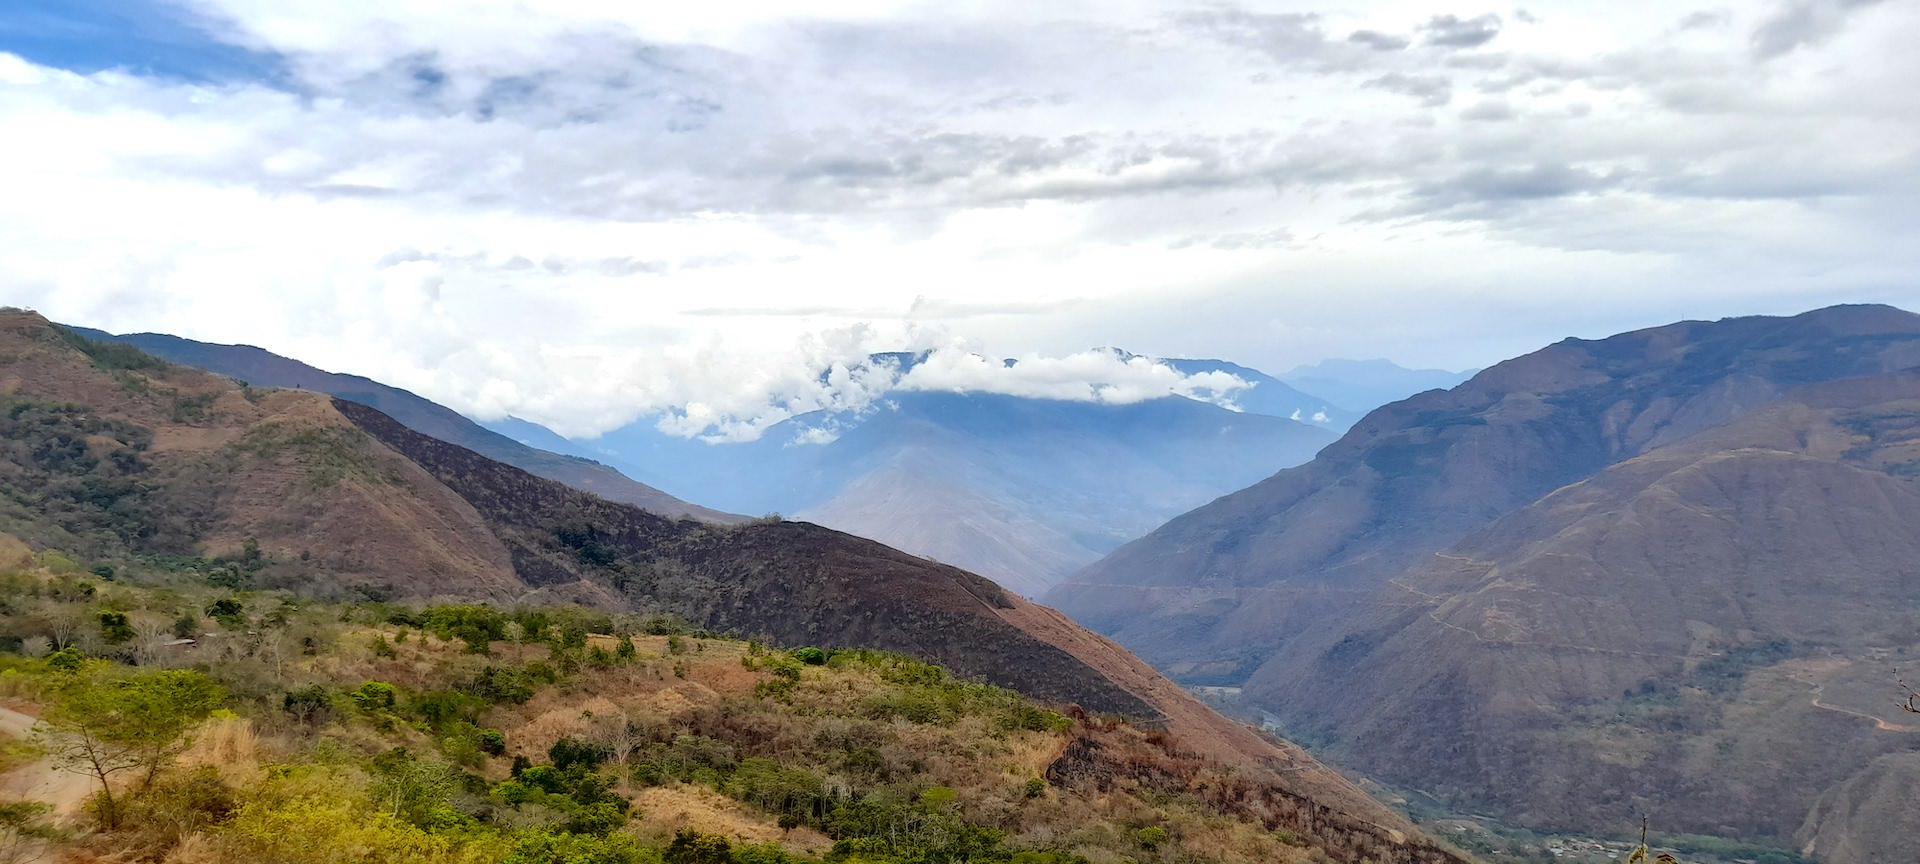  Echerati Peru landscape 